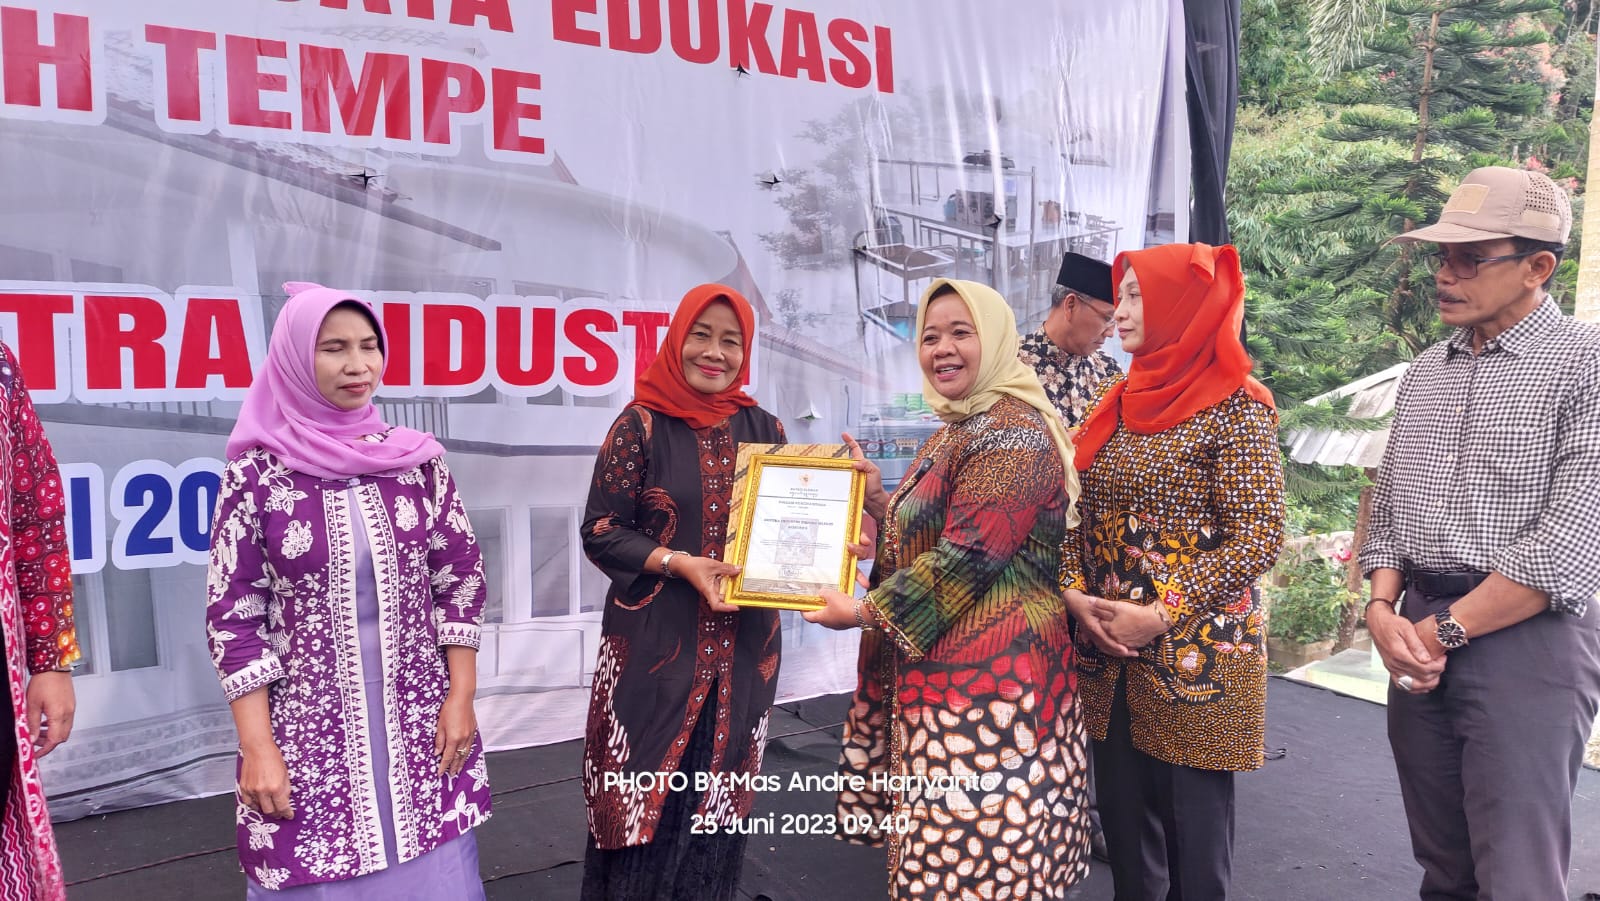 Hadir Rumah Promosi dan Wisata Edukasi Sentra Jadah Tempe Yogyakarta